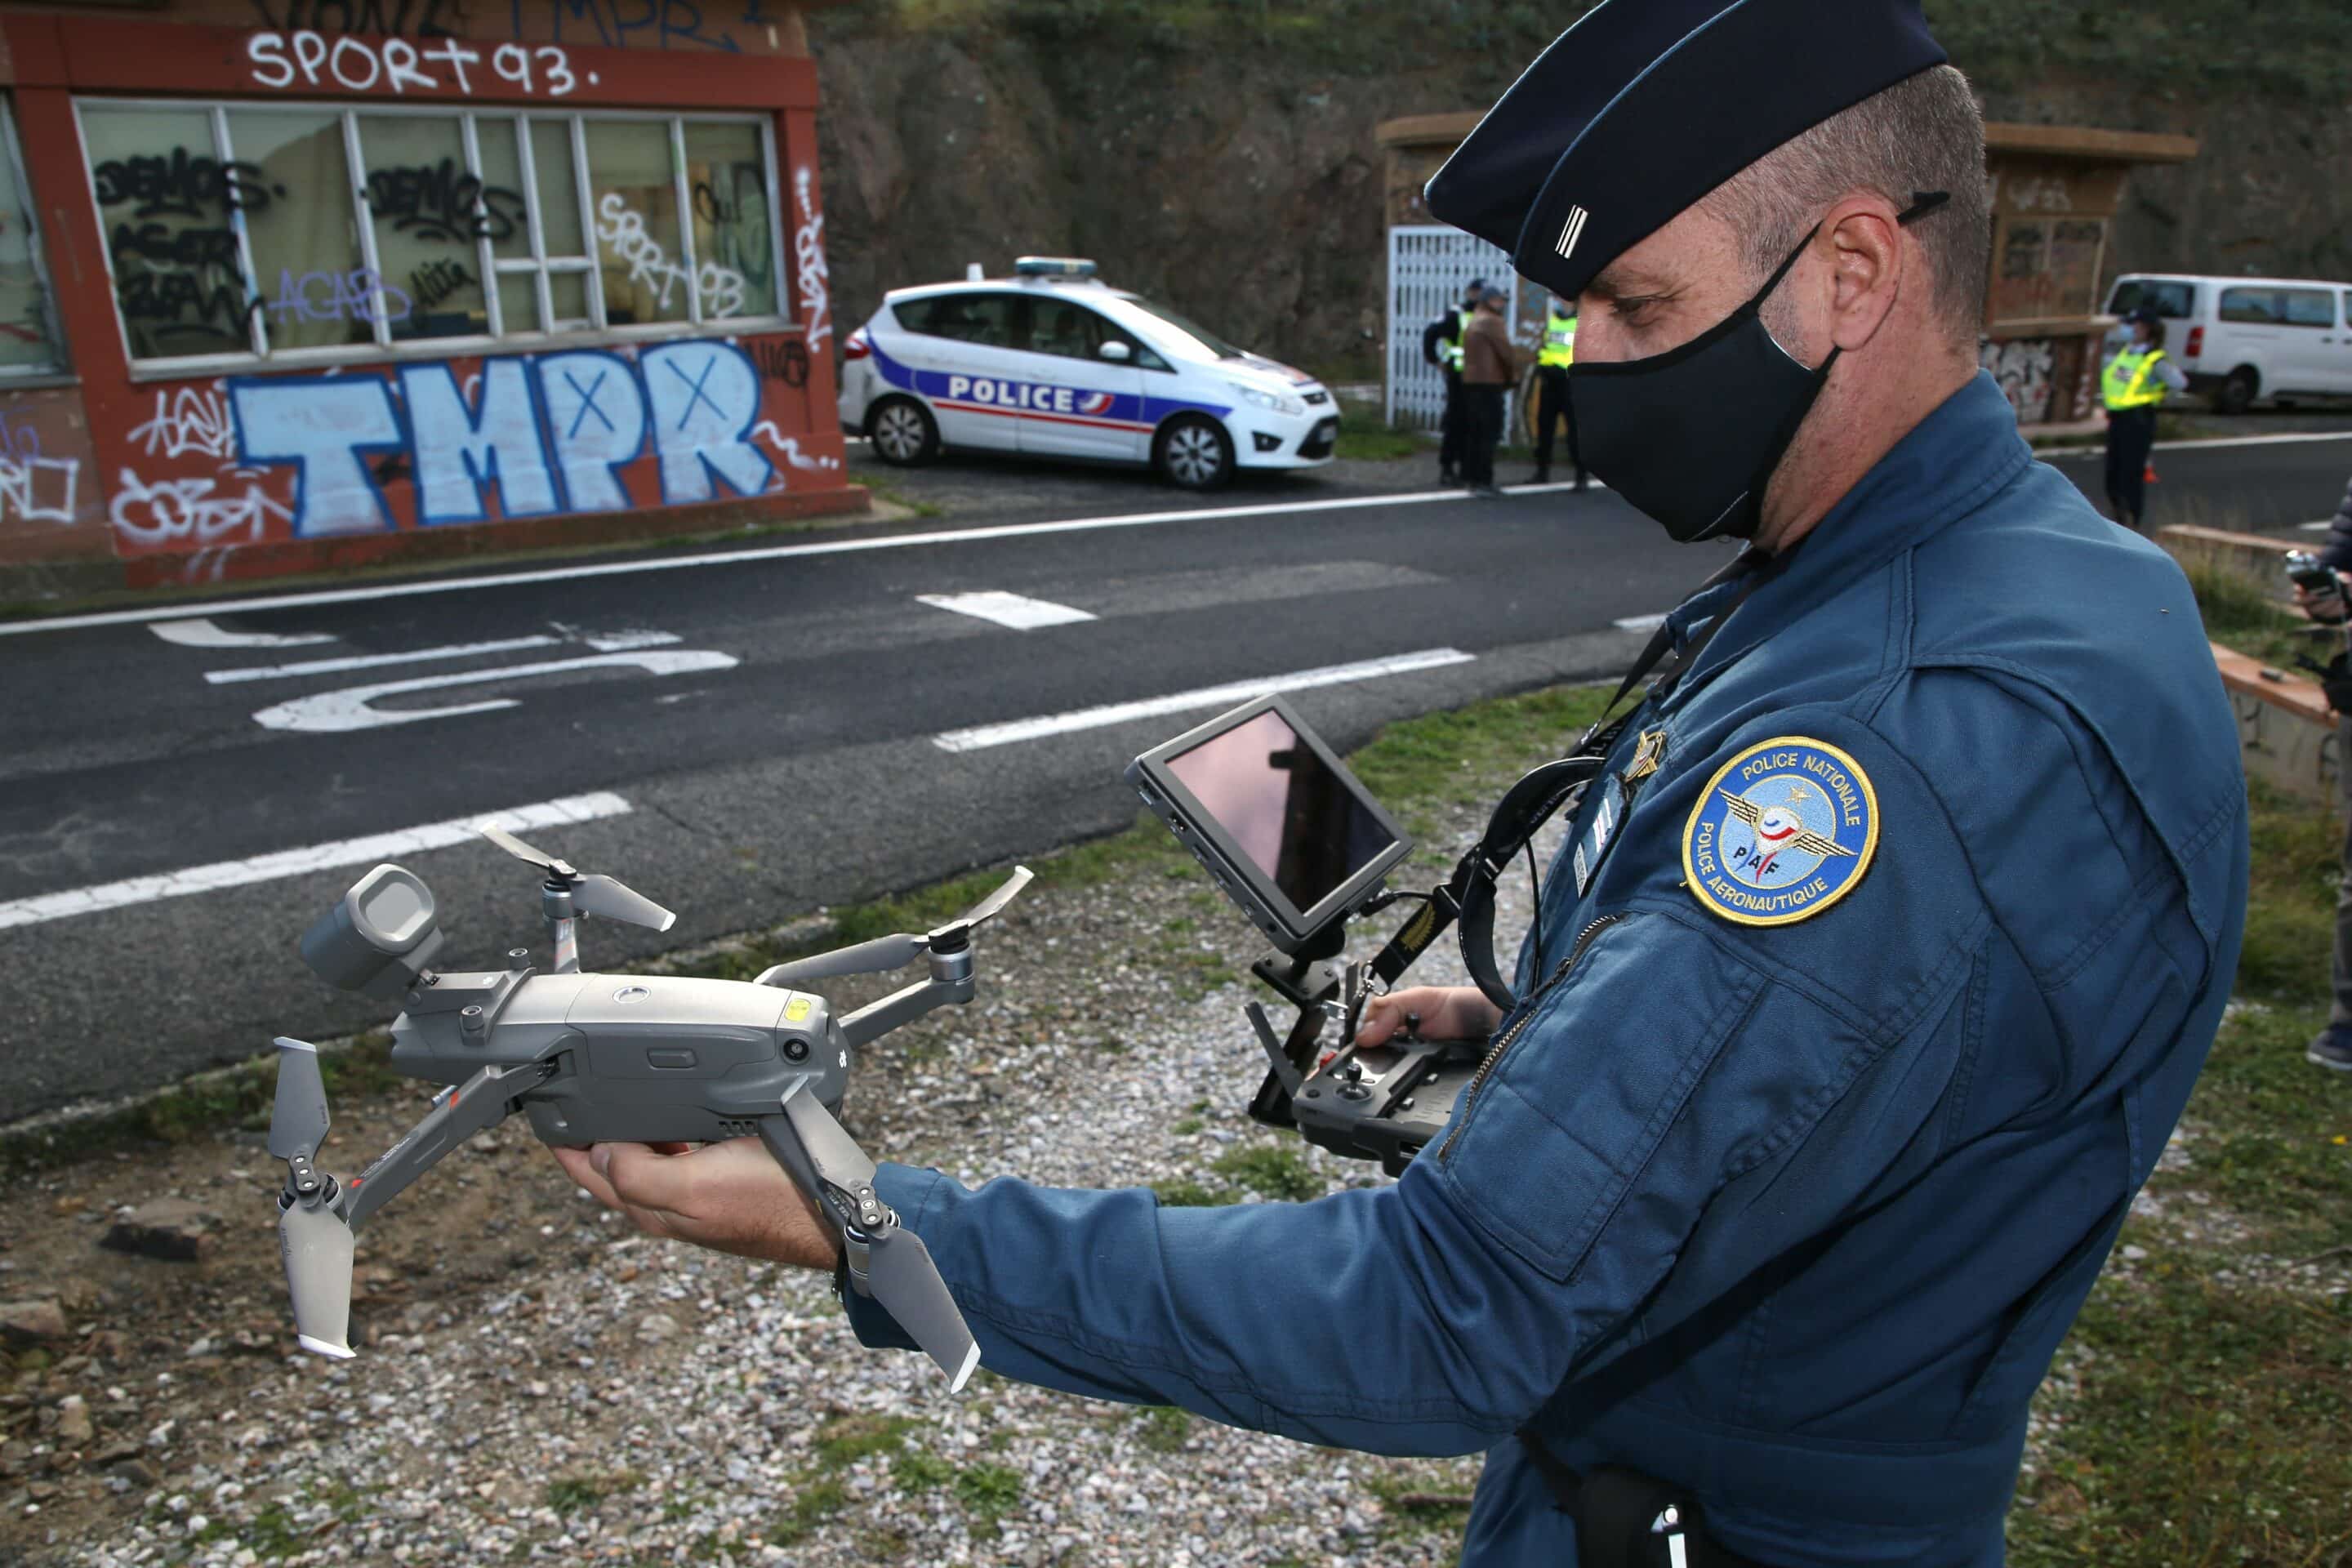 Un policier de la police aux frontiere (PAF) pose avec son drone de surveillance lors d'une demonstration au Col des Ballistres-France, le samedi 14 novembre 2020.
//ALAINROBERT_A13Z6470/2011151325/Credit:Alain ROBERT/SIPA/2011151328